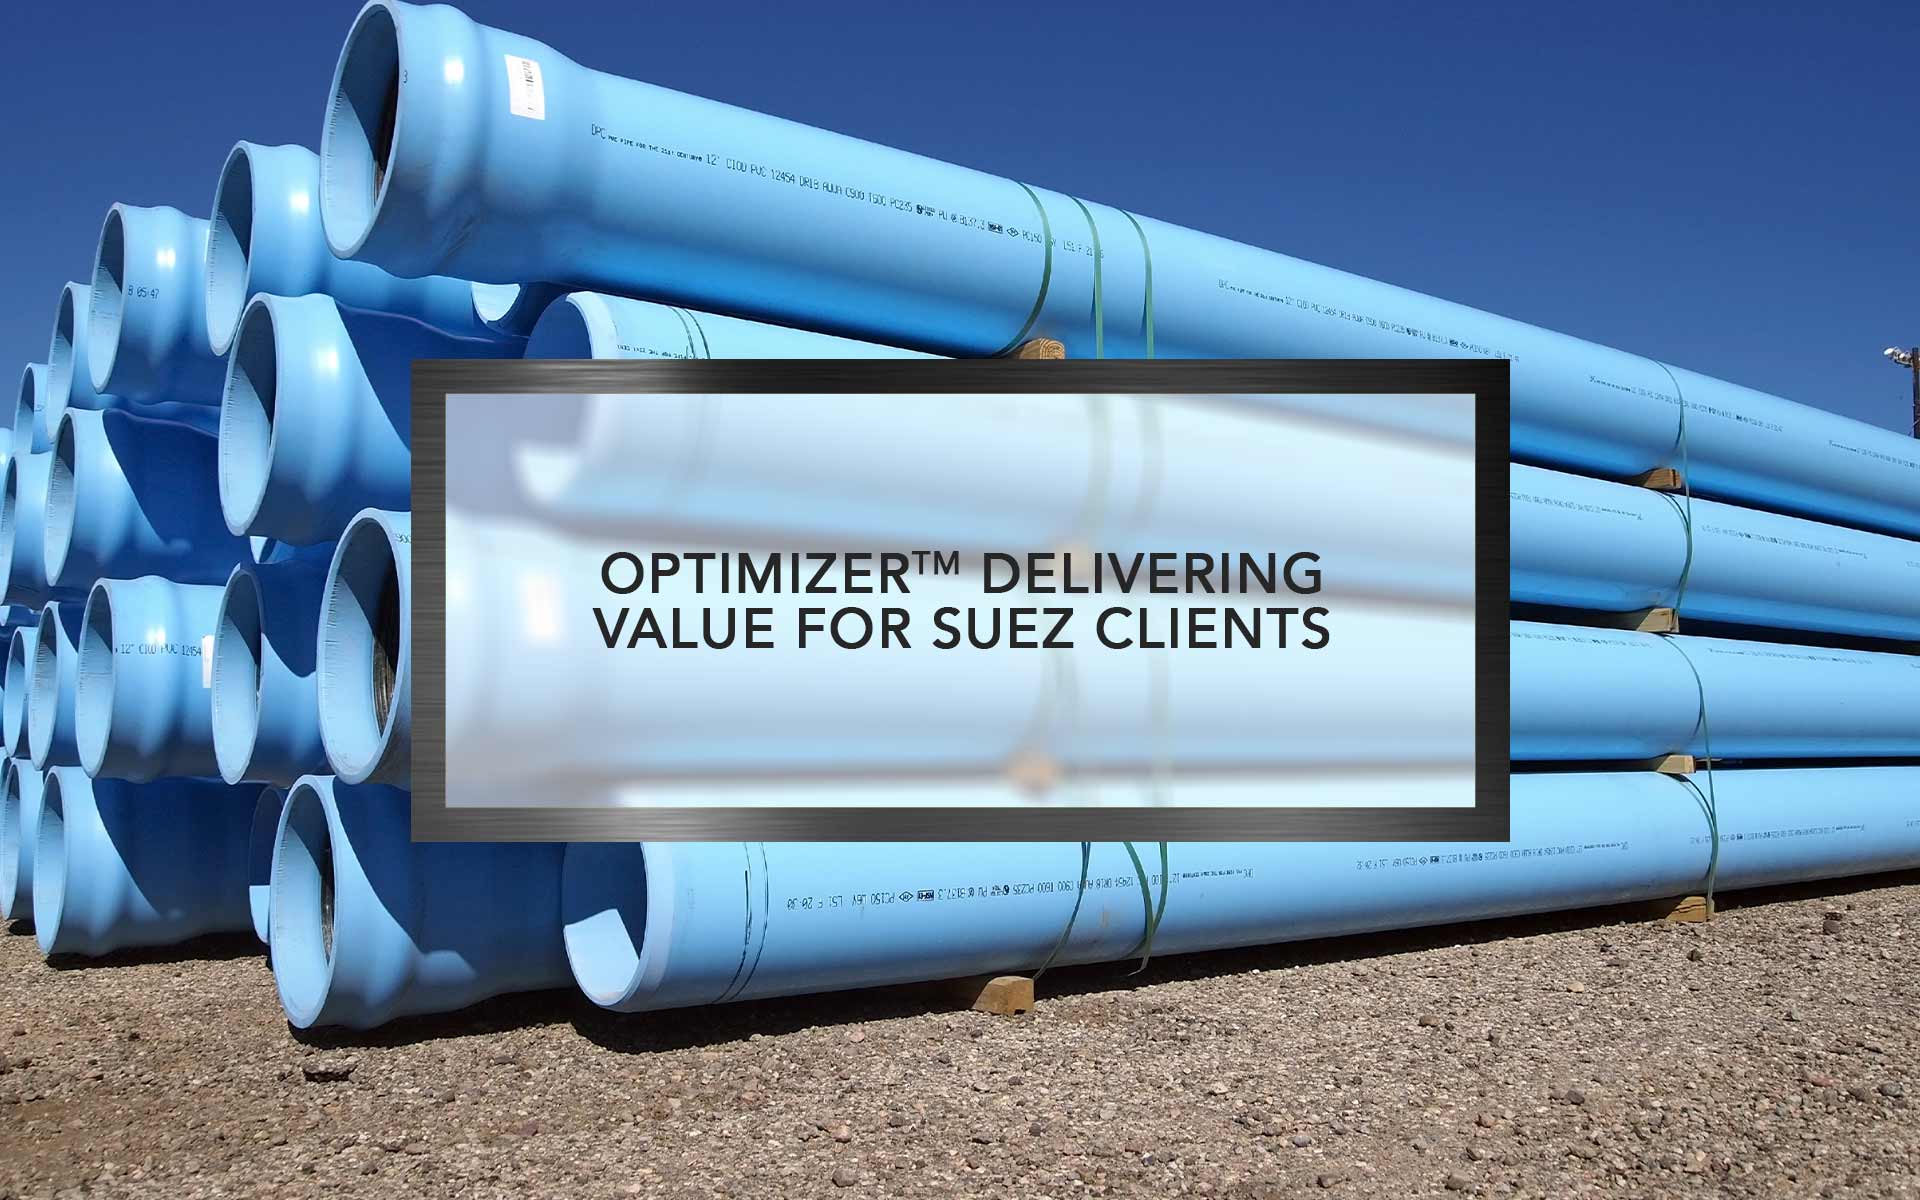 Optimizer delivering value for Suez clients